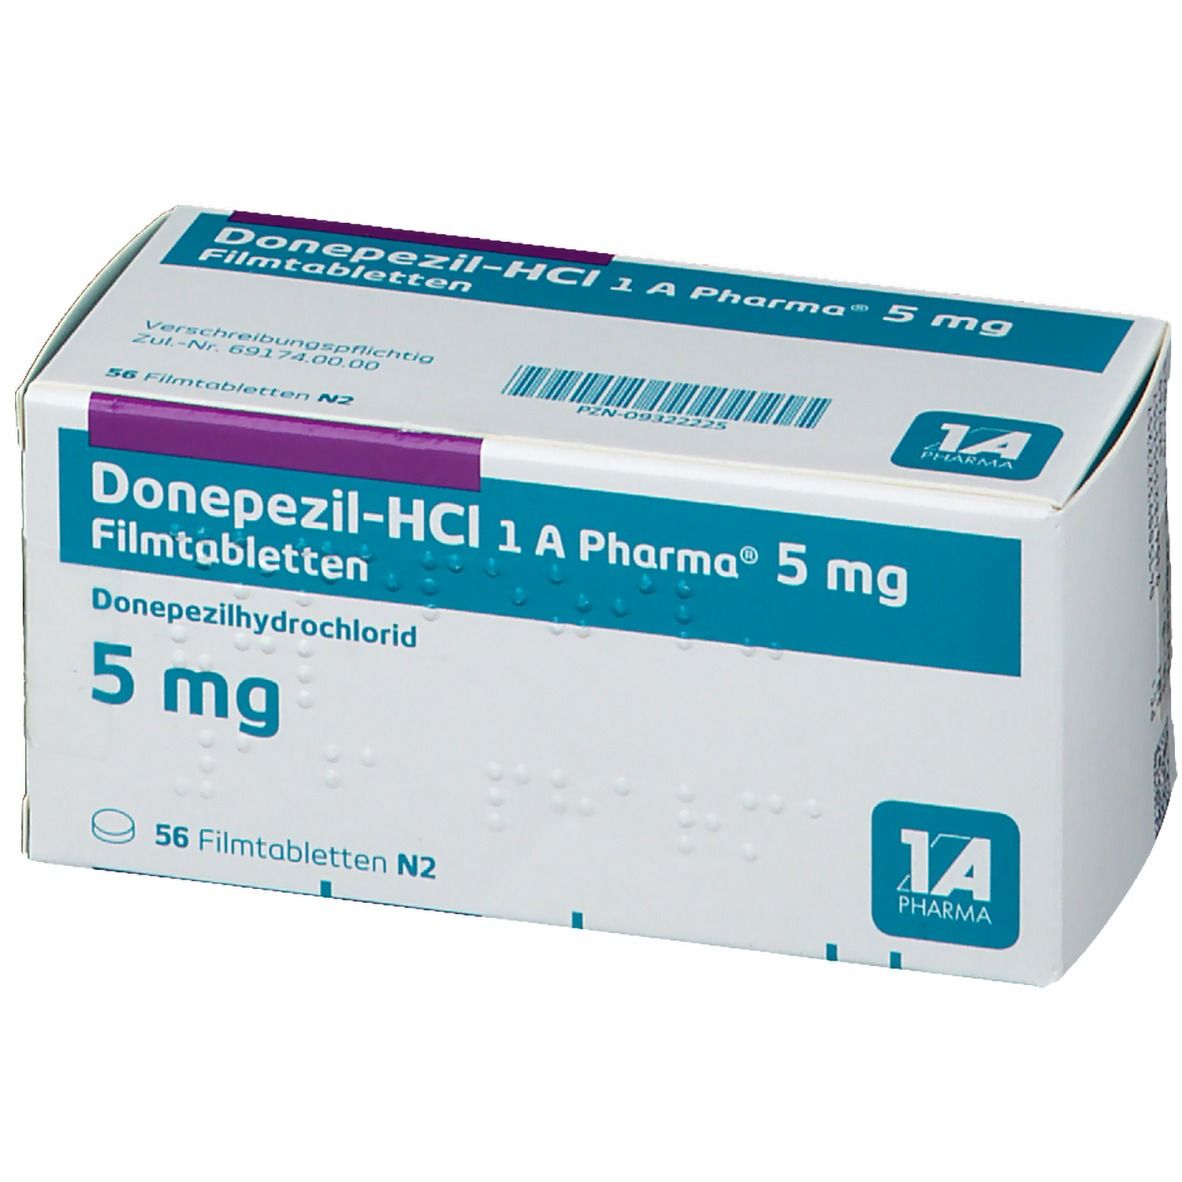 Donepezil-HCl - 1 A Pharma® 5 mg Schmelztabletten